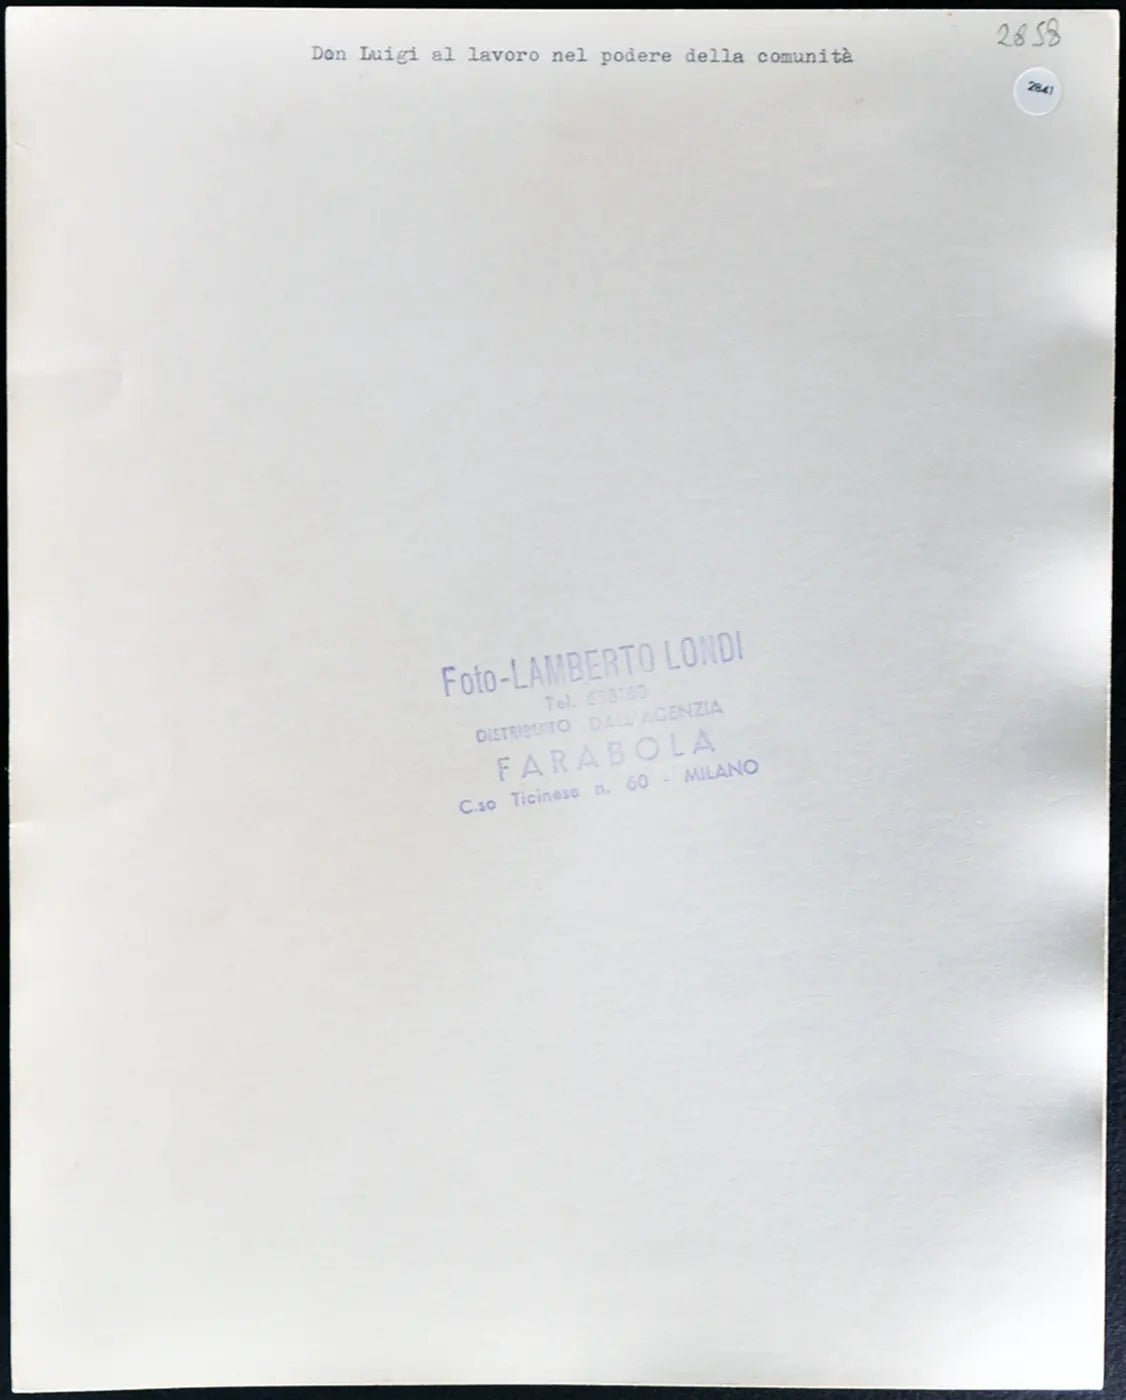 Don Luigi al lavoro anni 60 Ft 2841 - Stampa 24x30 cm - Farabola Stampa ai sali d'argento